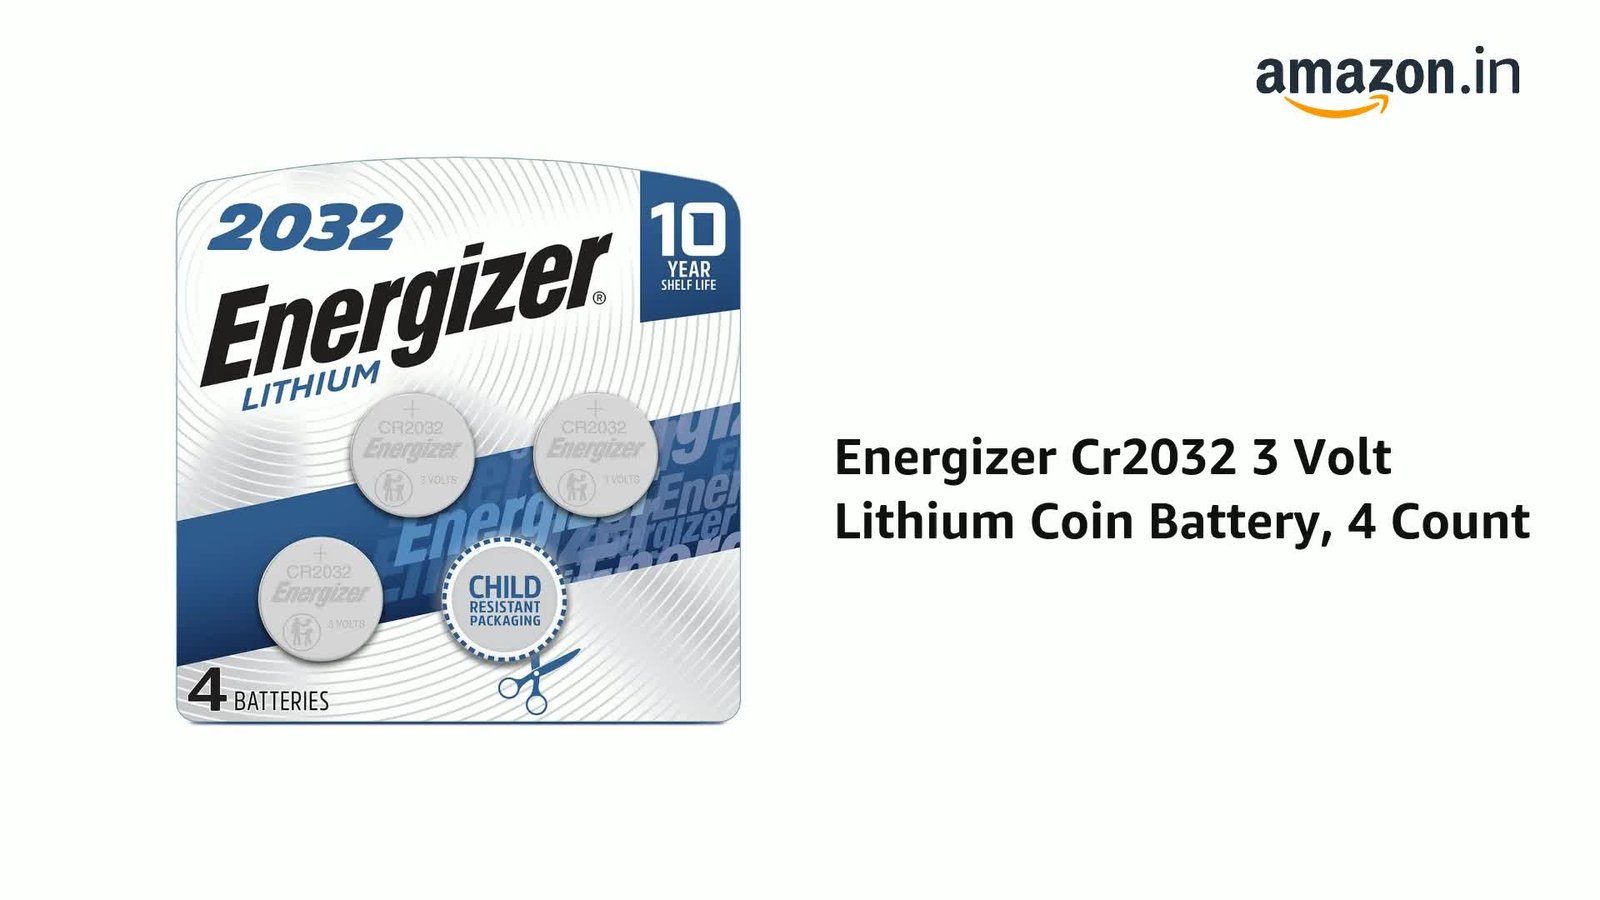 CR2032 battery